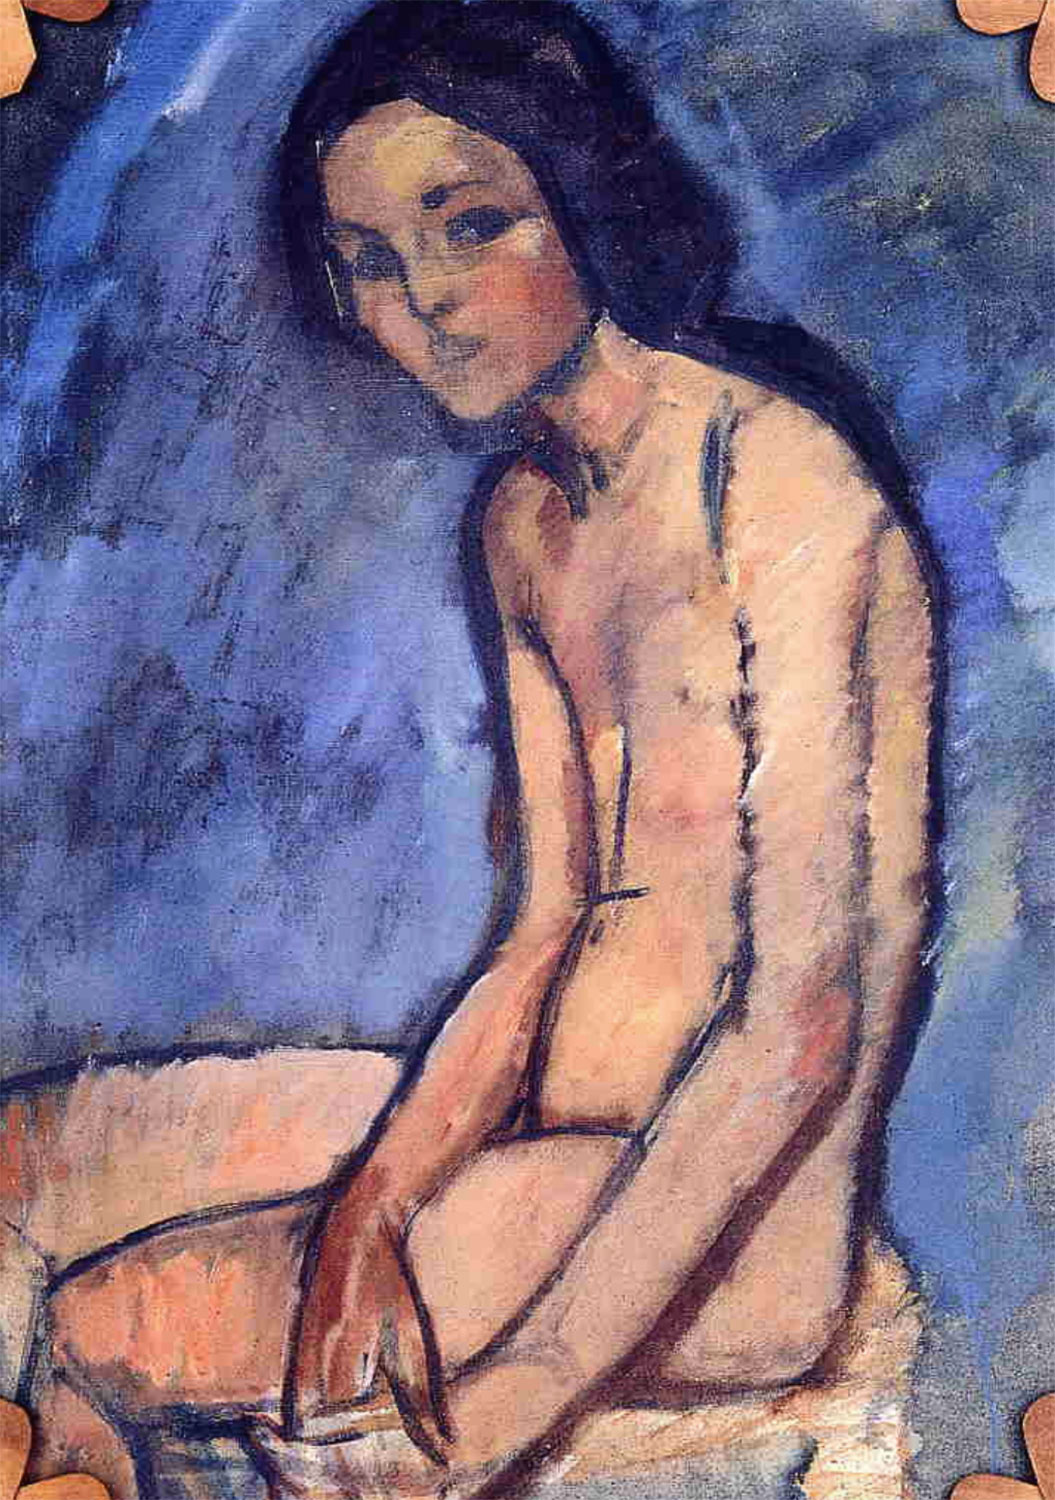 Nudo seduto - Seated Nude - Amedeo Modigliani (1909)